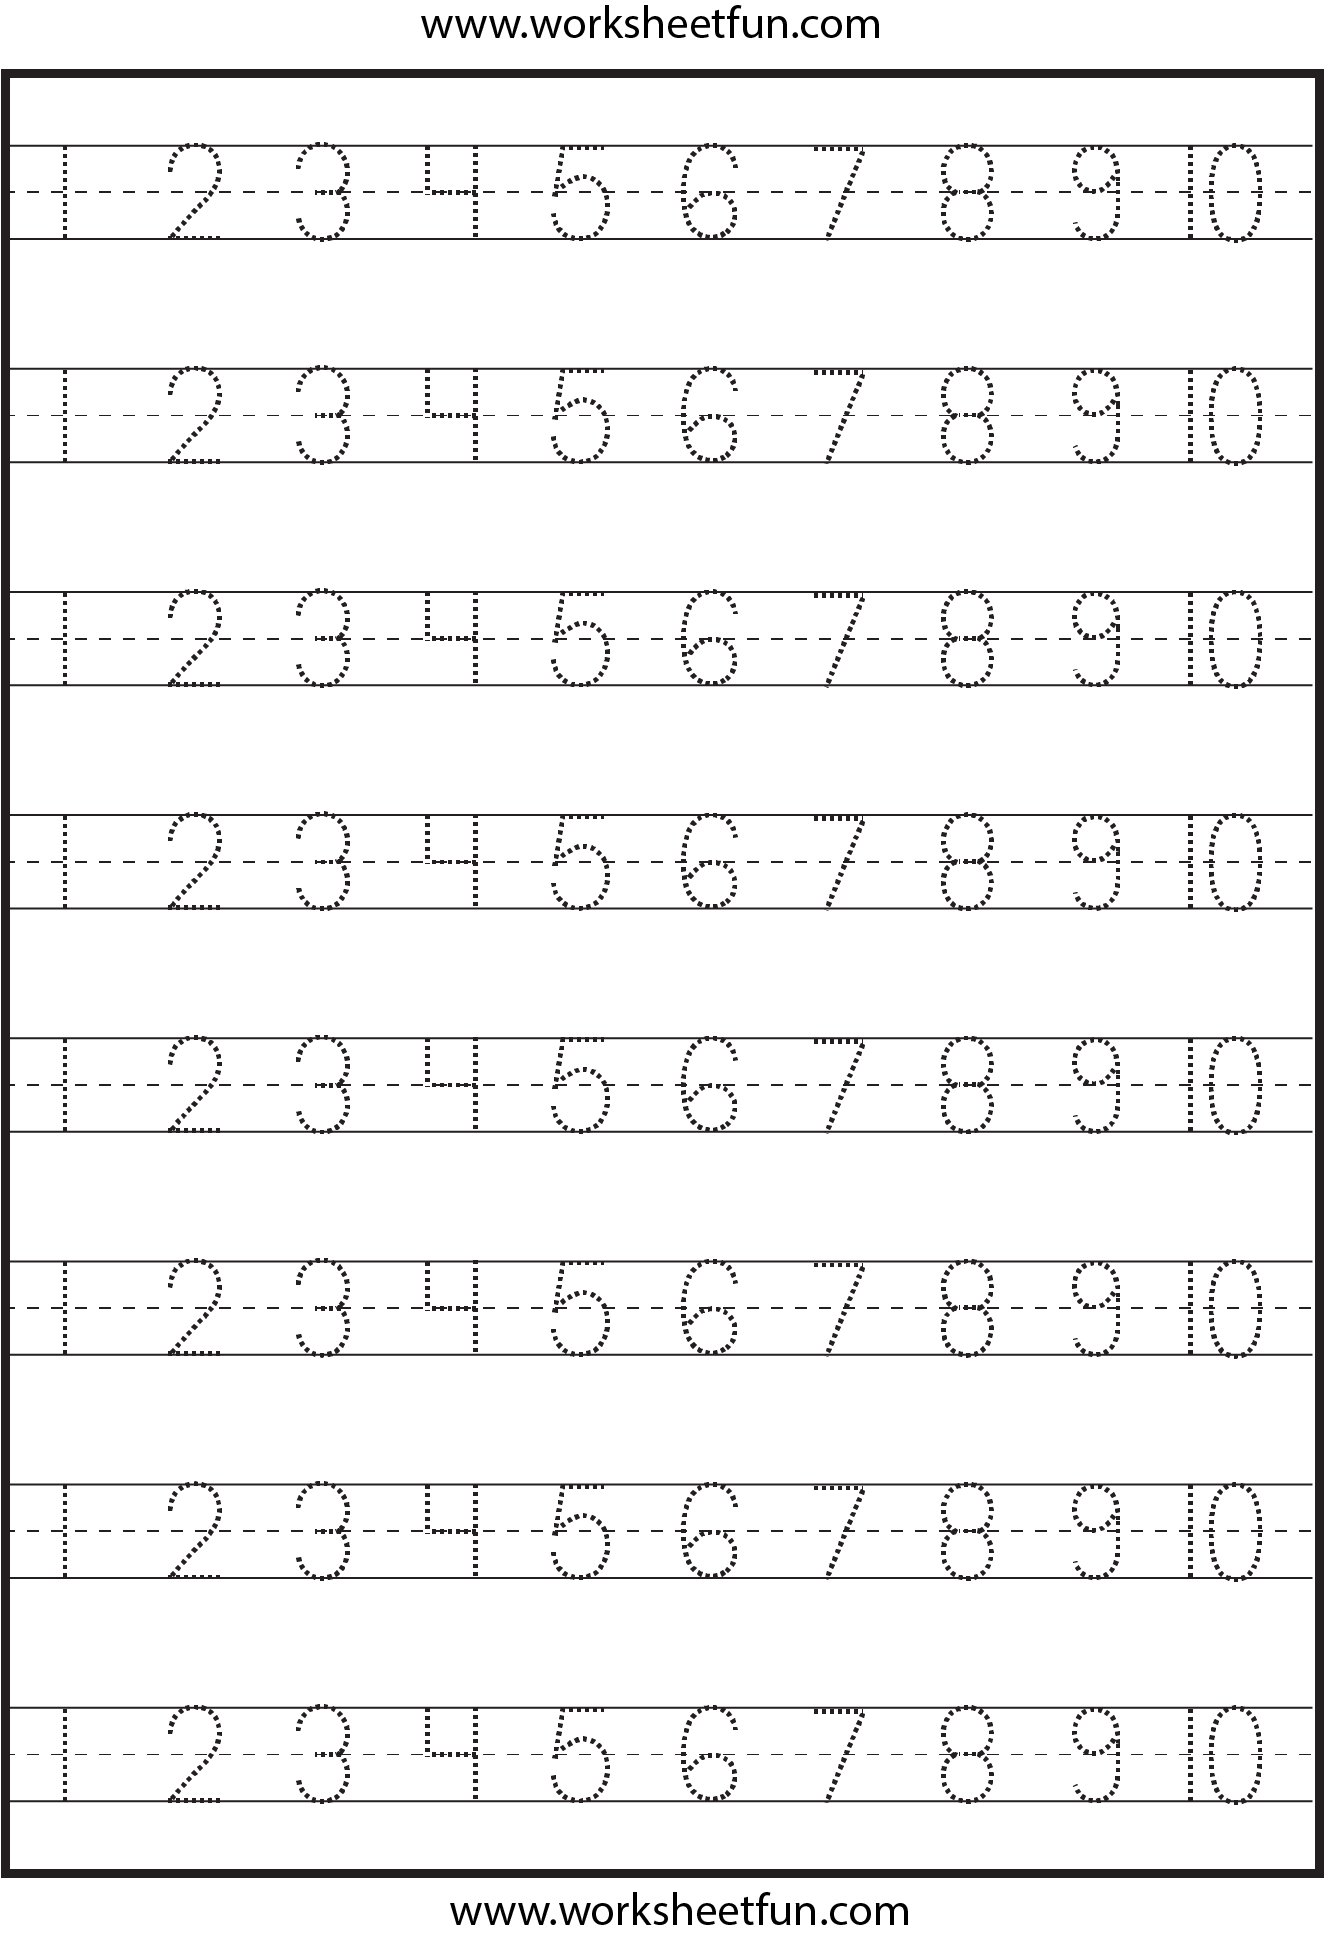 Free Printable Number Worksheets For Kindergarten